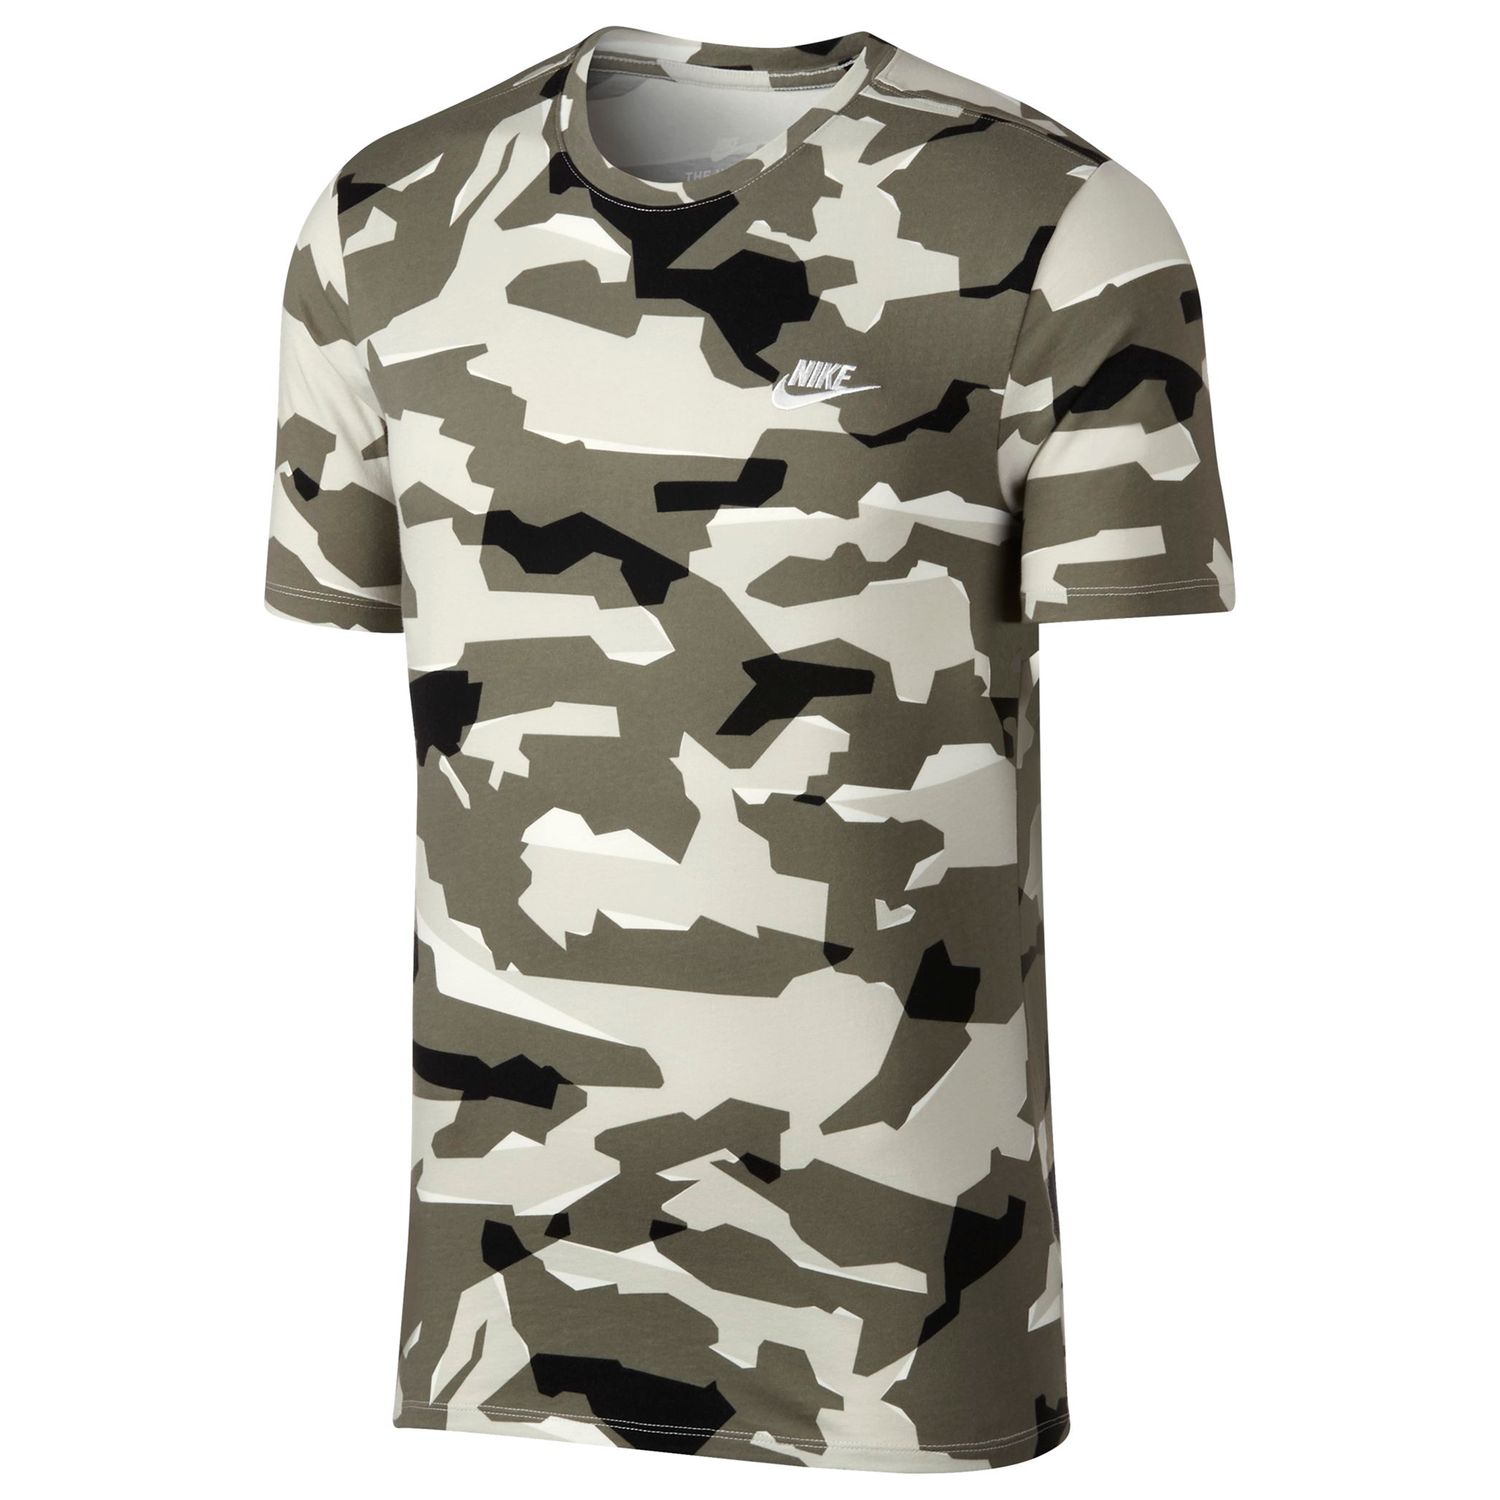 nike camouflage shirt